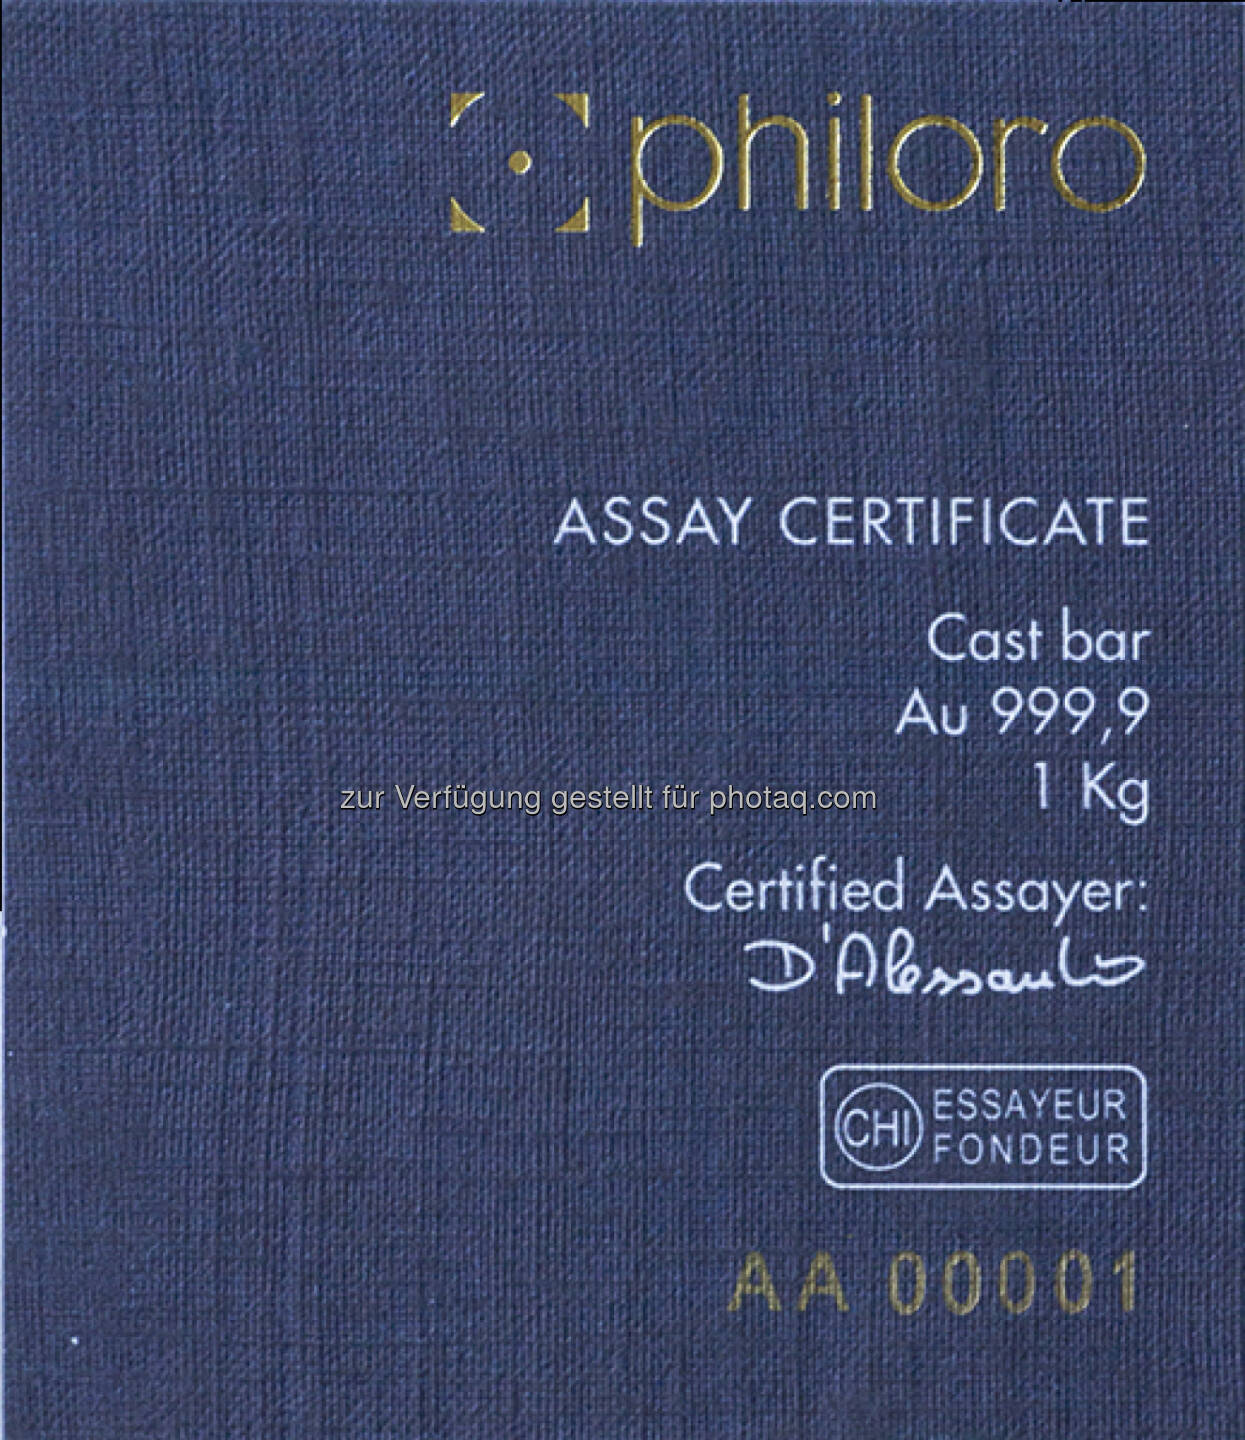 philoro LBMA-Certificate 